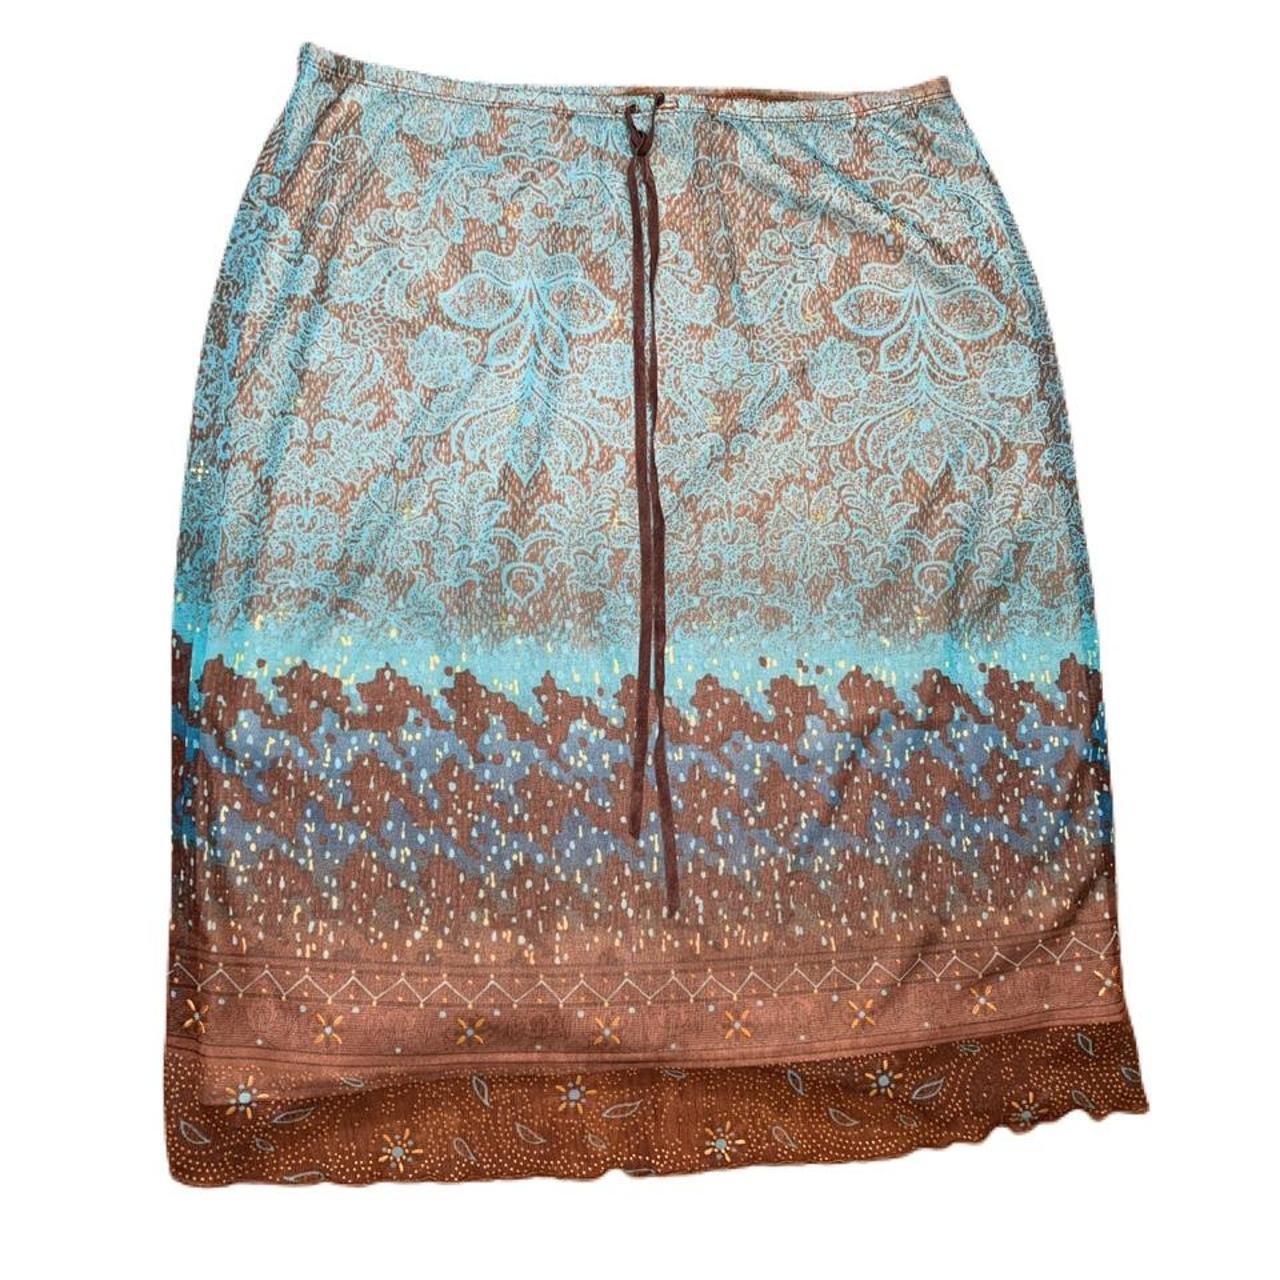 Y2K boho patterned skirt 💕 ABOUT THE ITEM 💕 Brown... - Depop